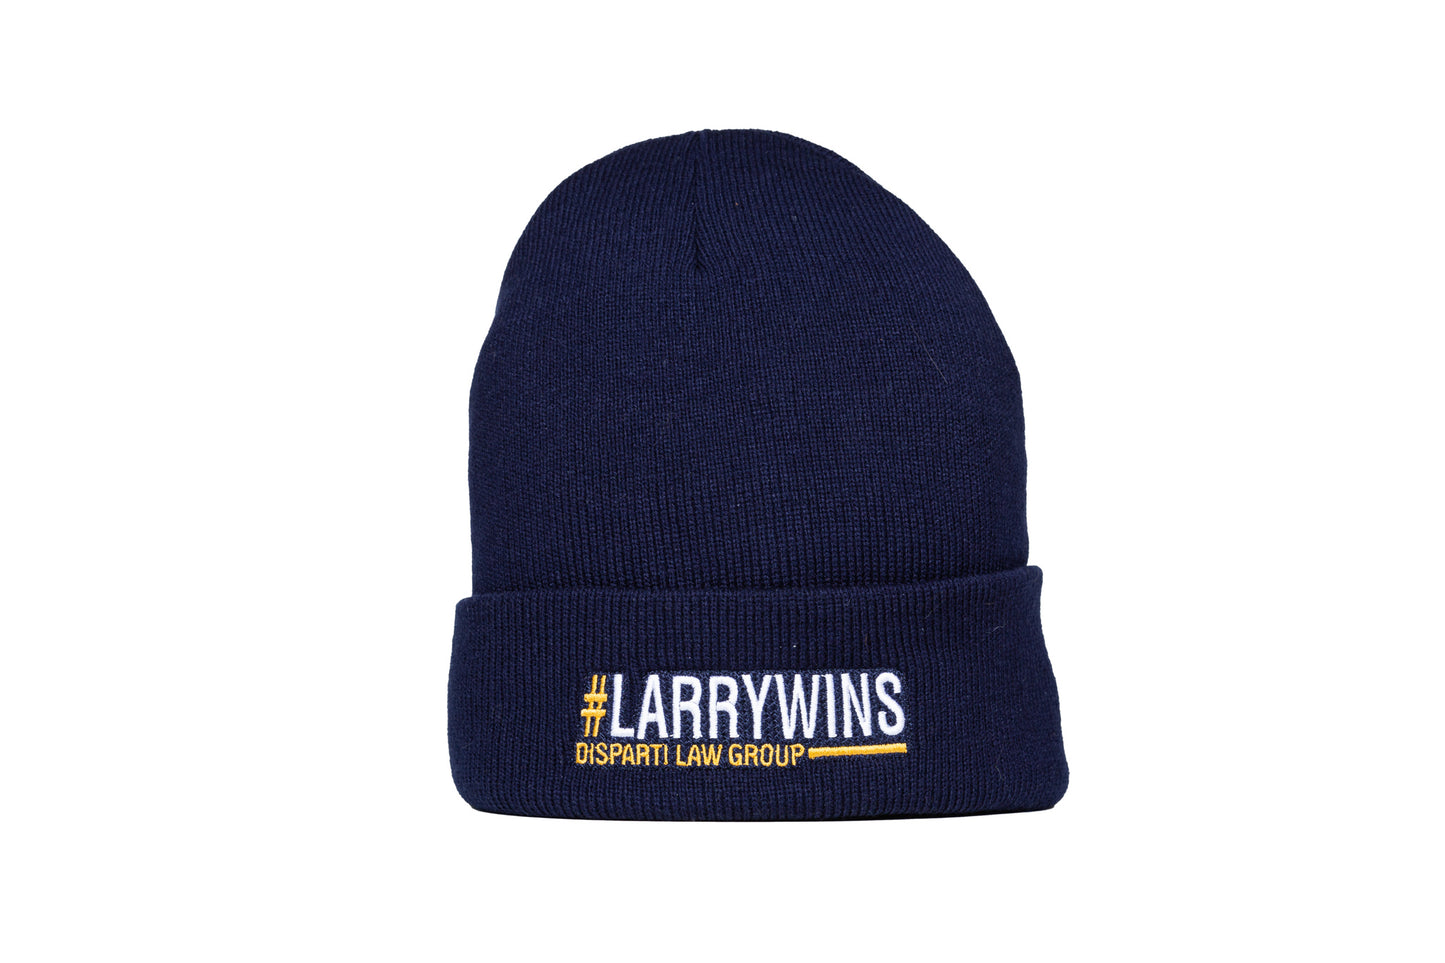 #LarryWins Ski Cap with Flap